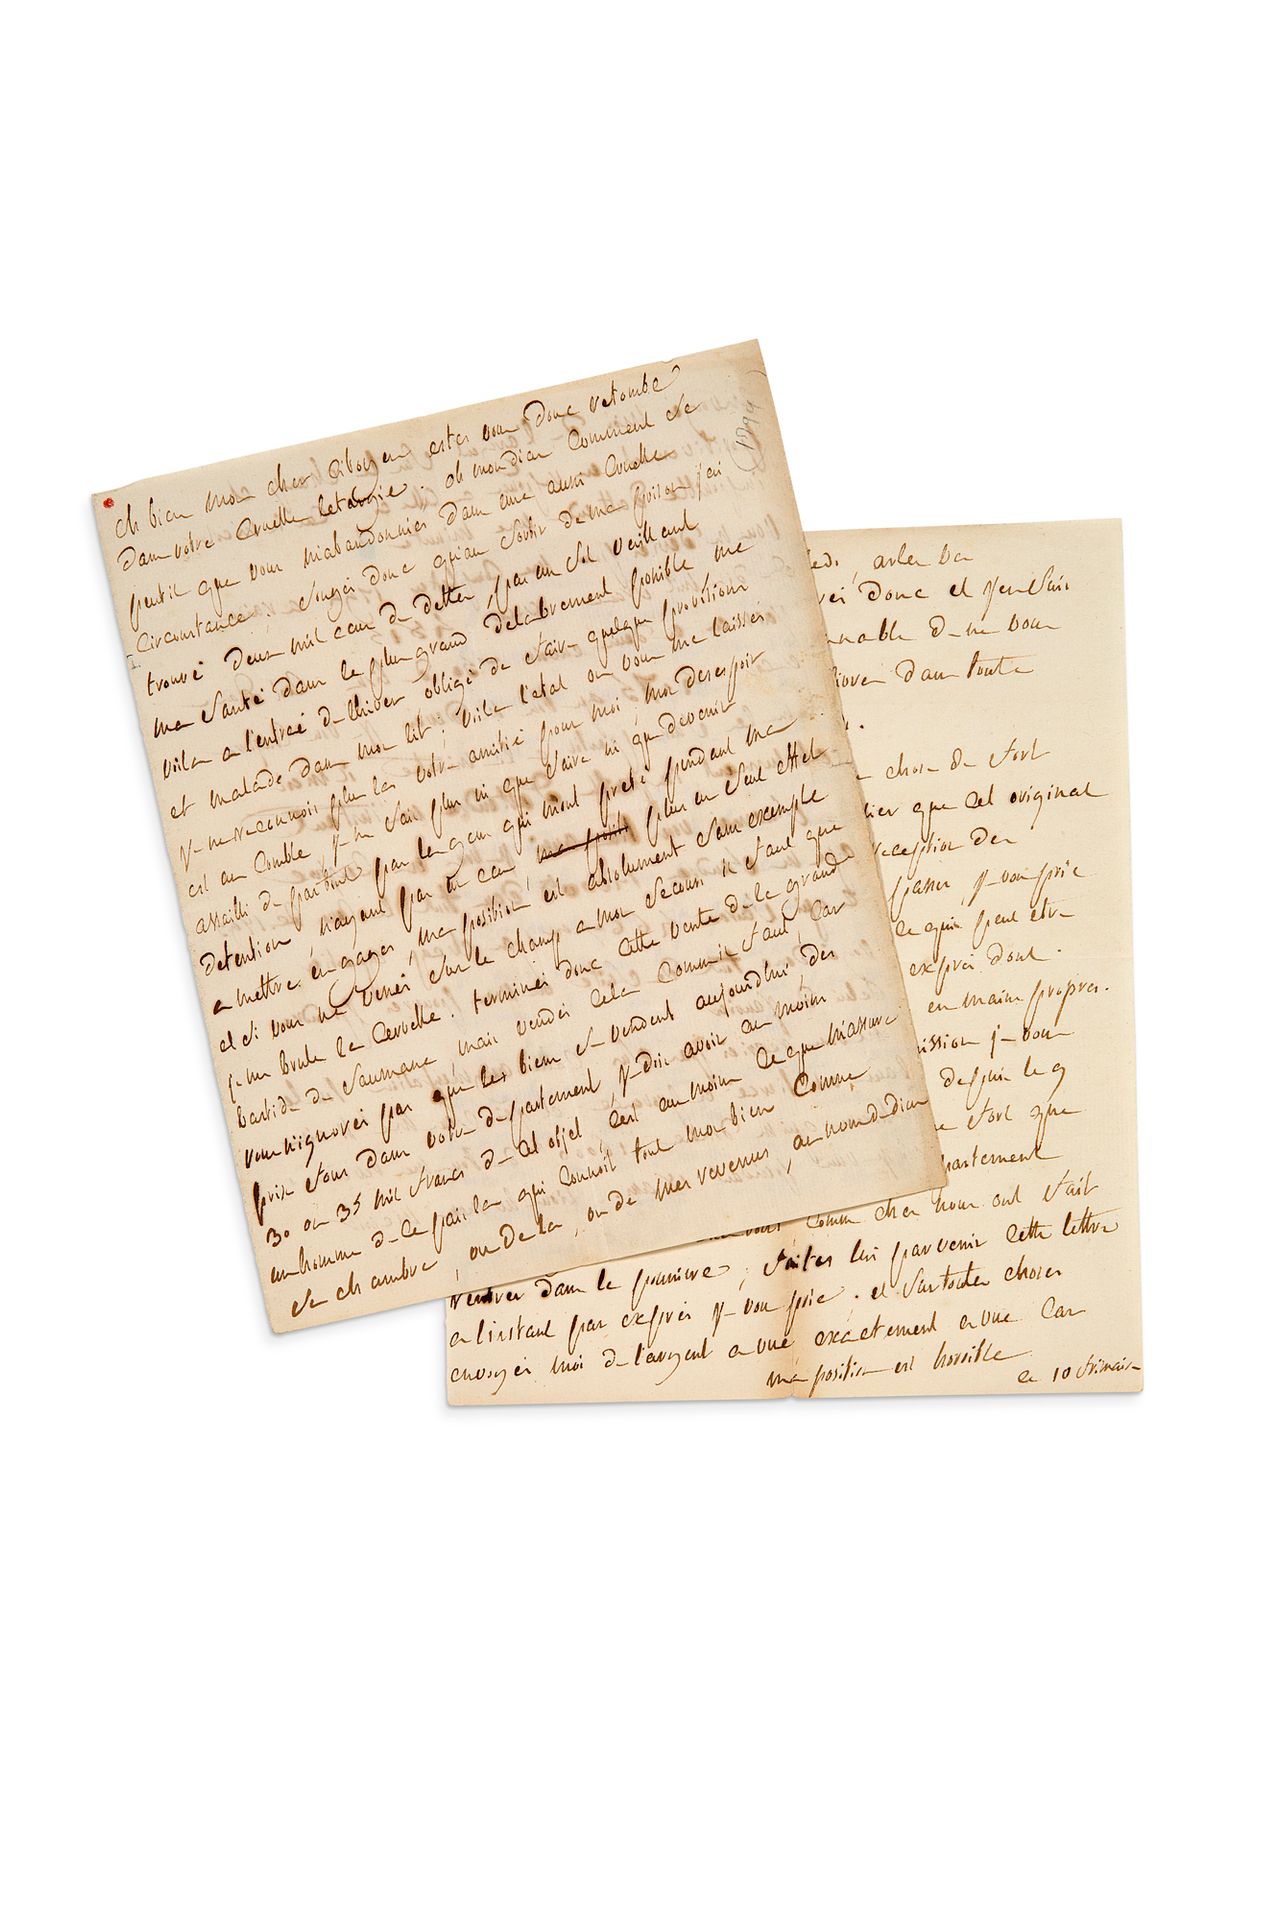 SADE Donatien-Alphonse, marquis de (1740-1814) Autograph letter addressed to his&hellip;